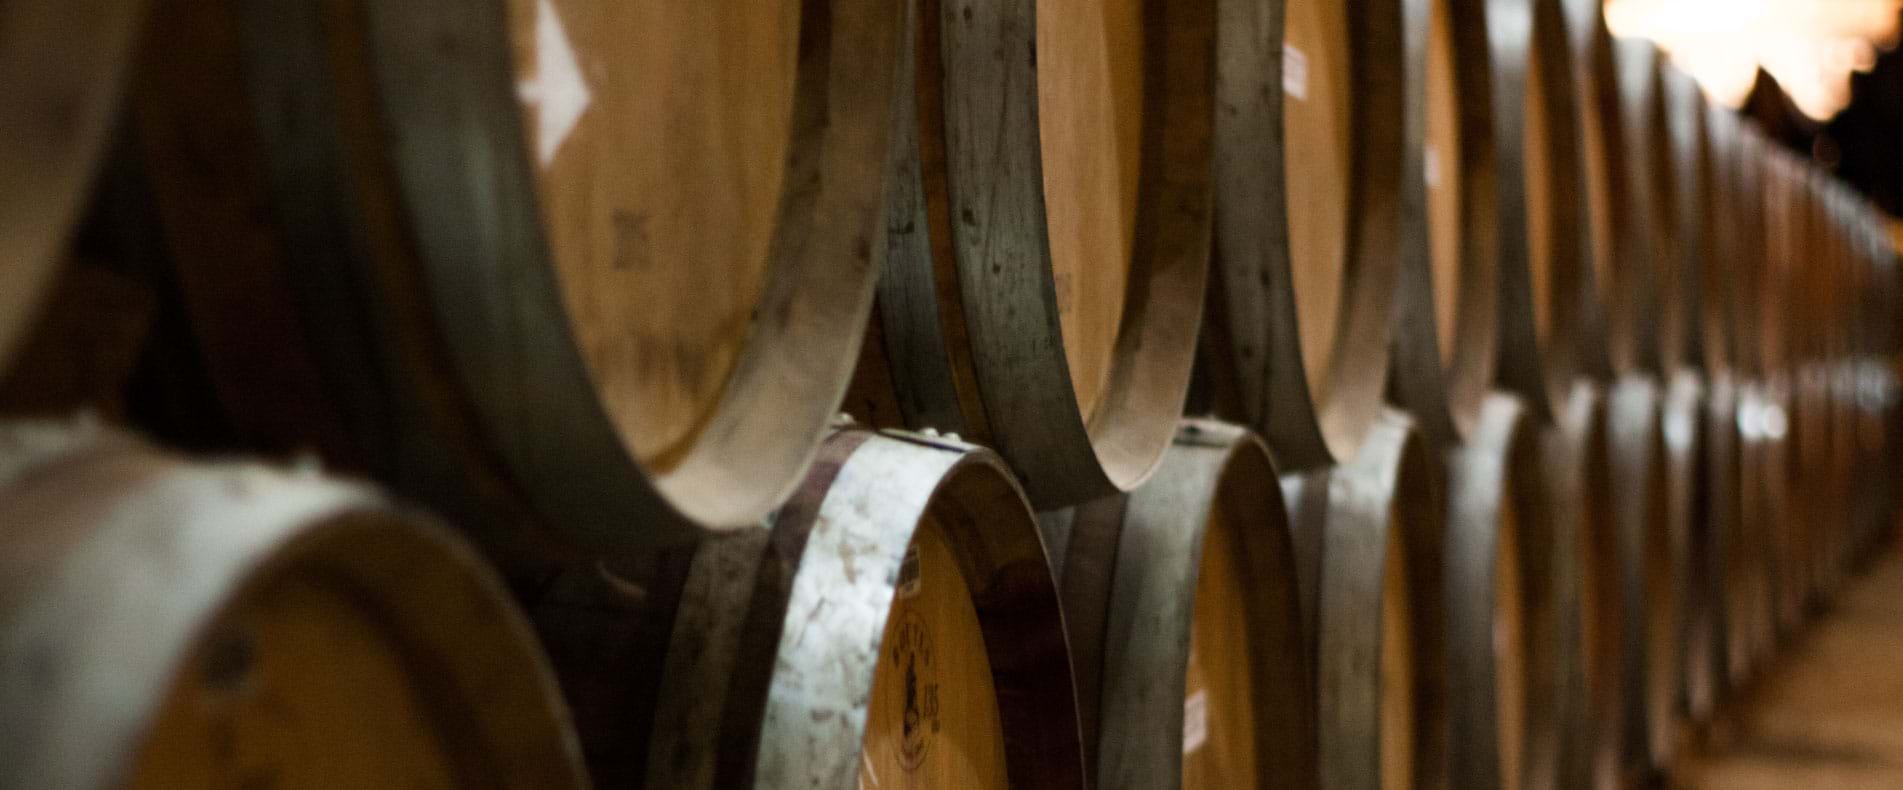 Wine barrels at Undurraga Winery in Maipo Valley, Chile